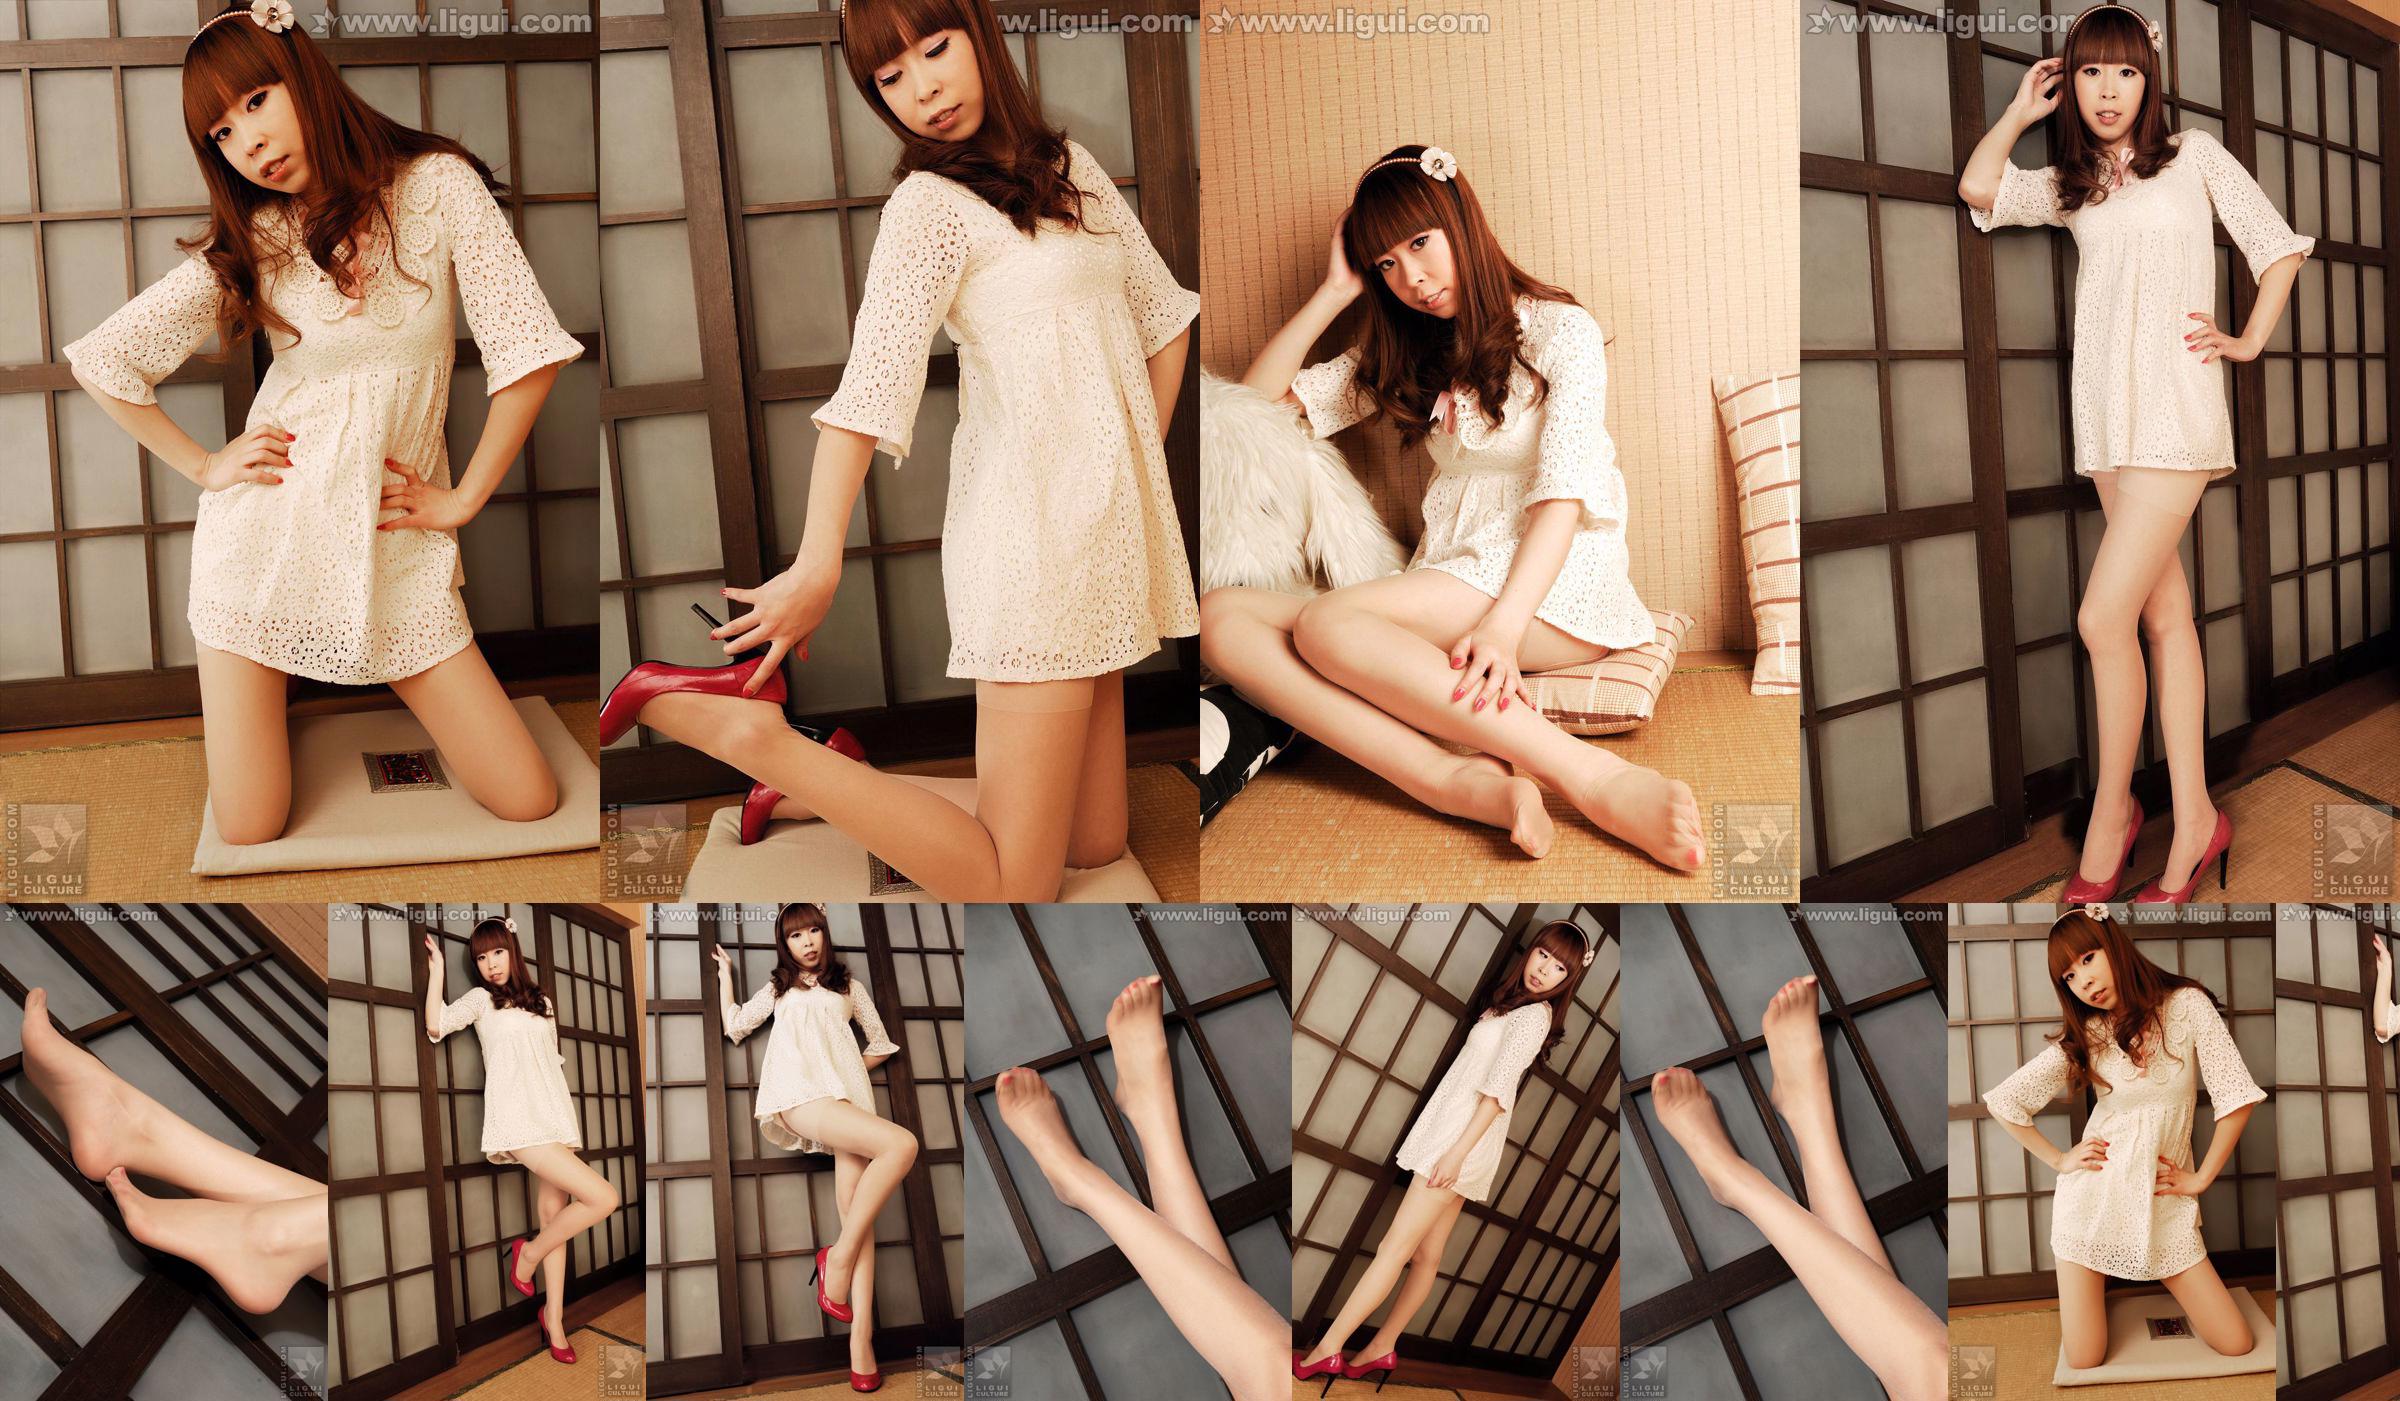 Modell Vikcy "Die Versuchung des japanischen Stils" [丽 柜 LiGui] Schöne Beine und Jadefuß Foto Bild No.ebee1b Seite 1